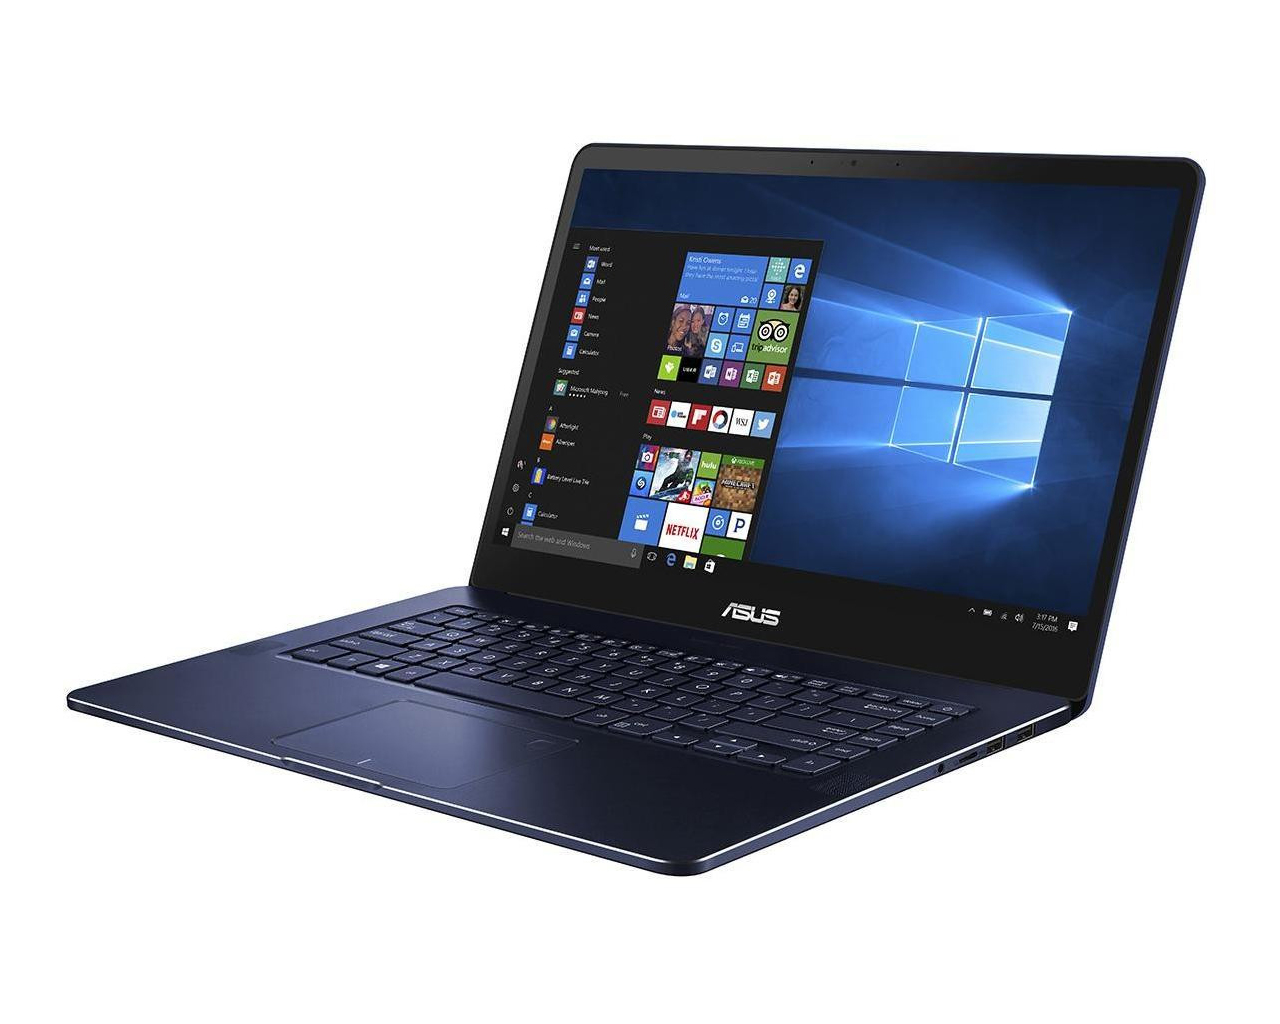 ASUS Zenbook Pro 15 UX550 Notebook